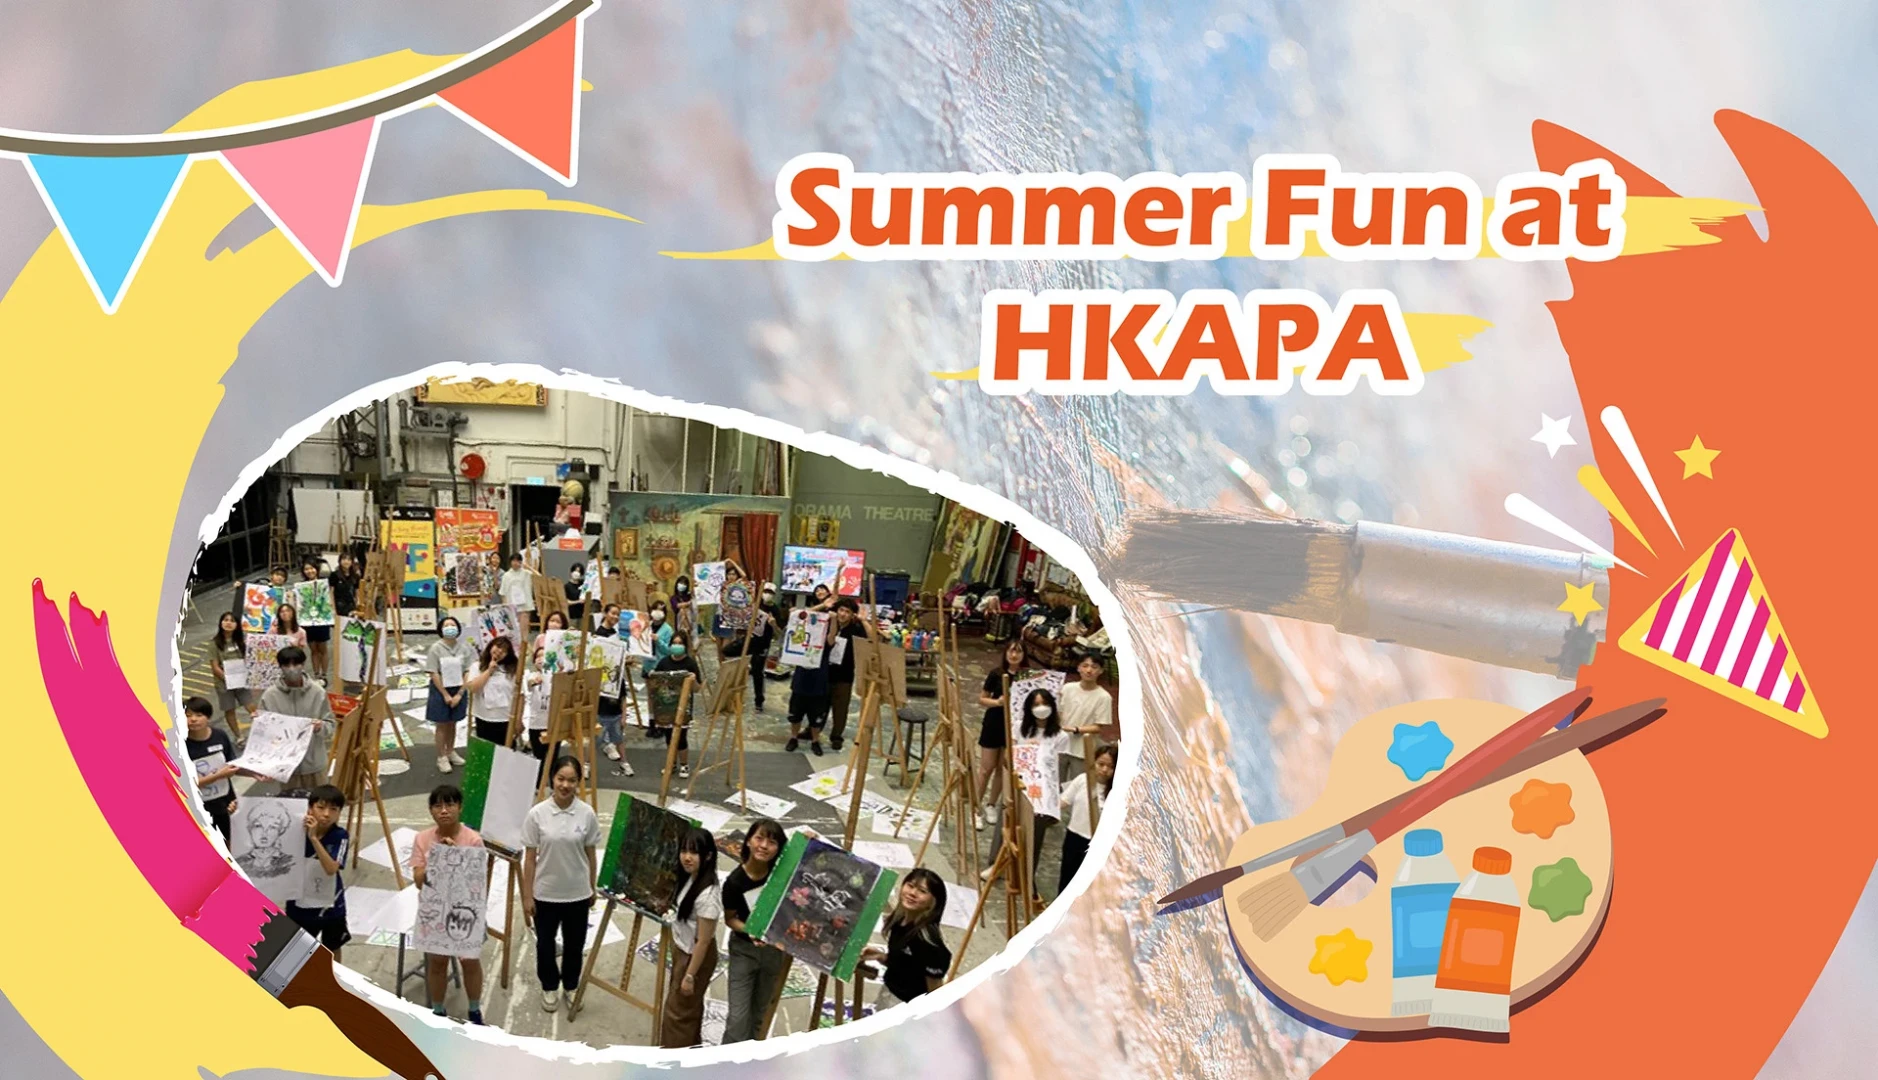 Summer Fun at HKAPA